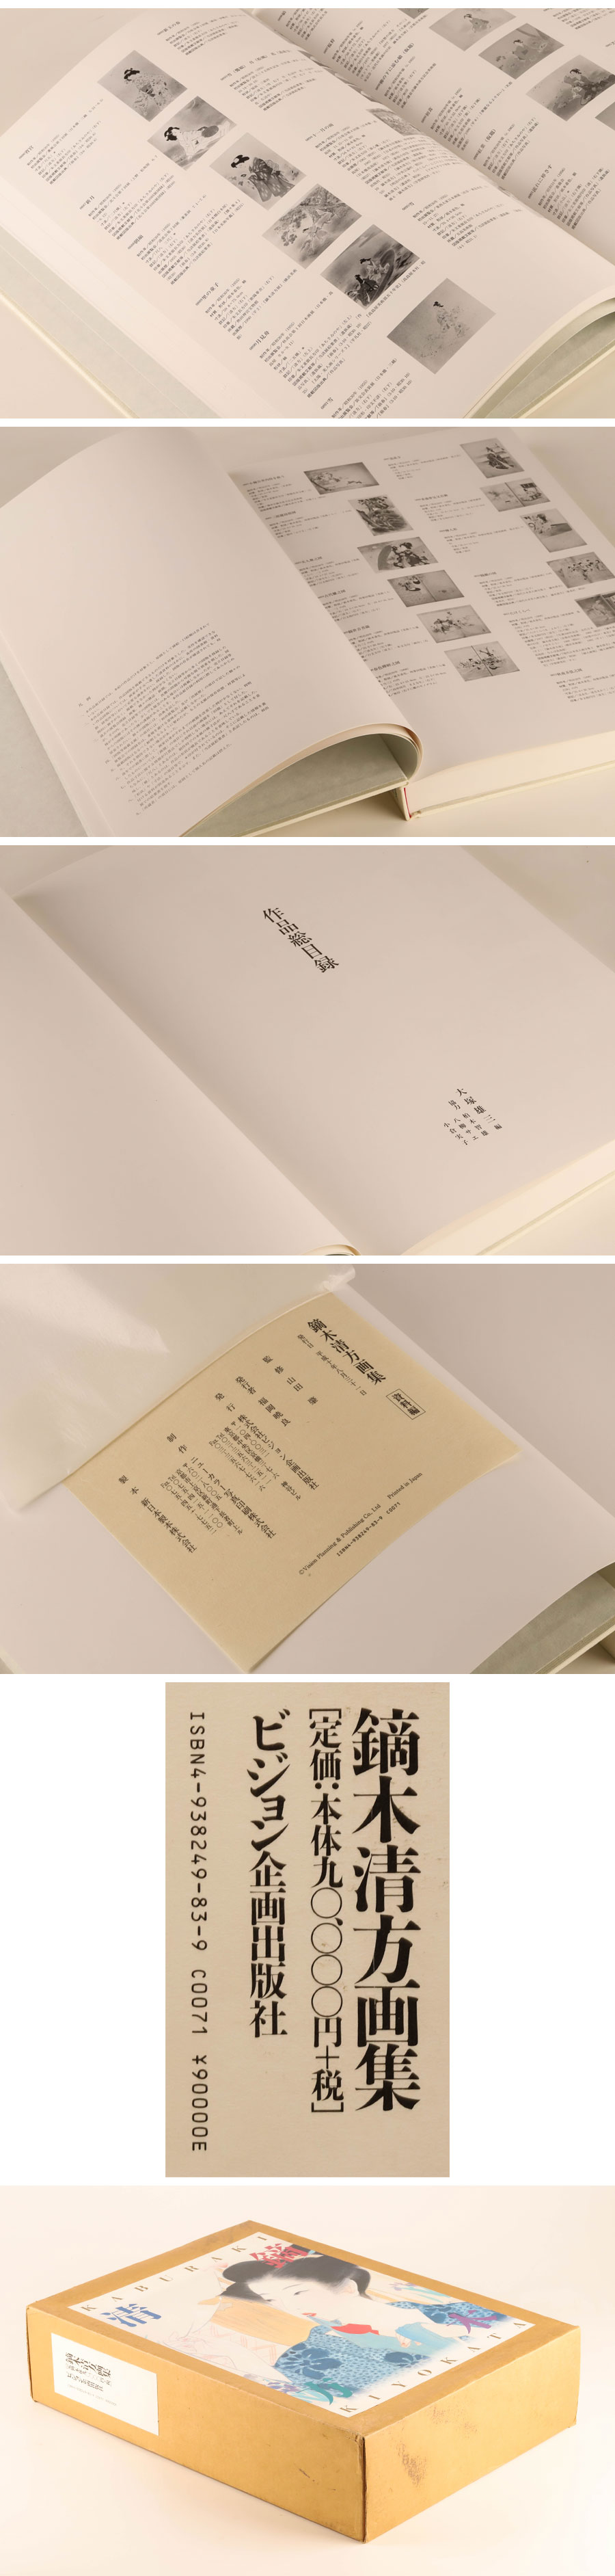 安価 ビジョン企画出版社 鏑木清方 日本のこころ 画集 (298;298) レア